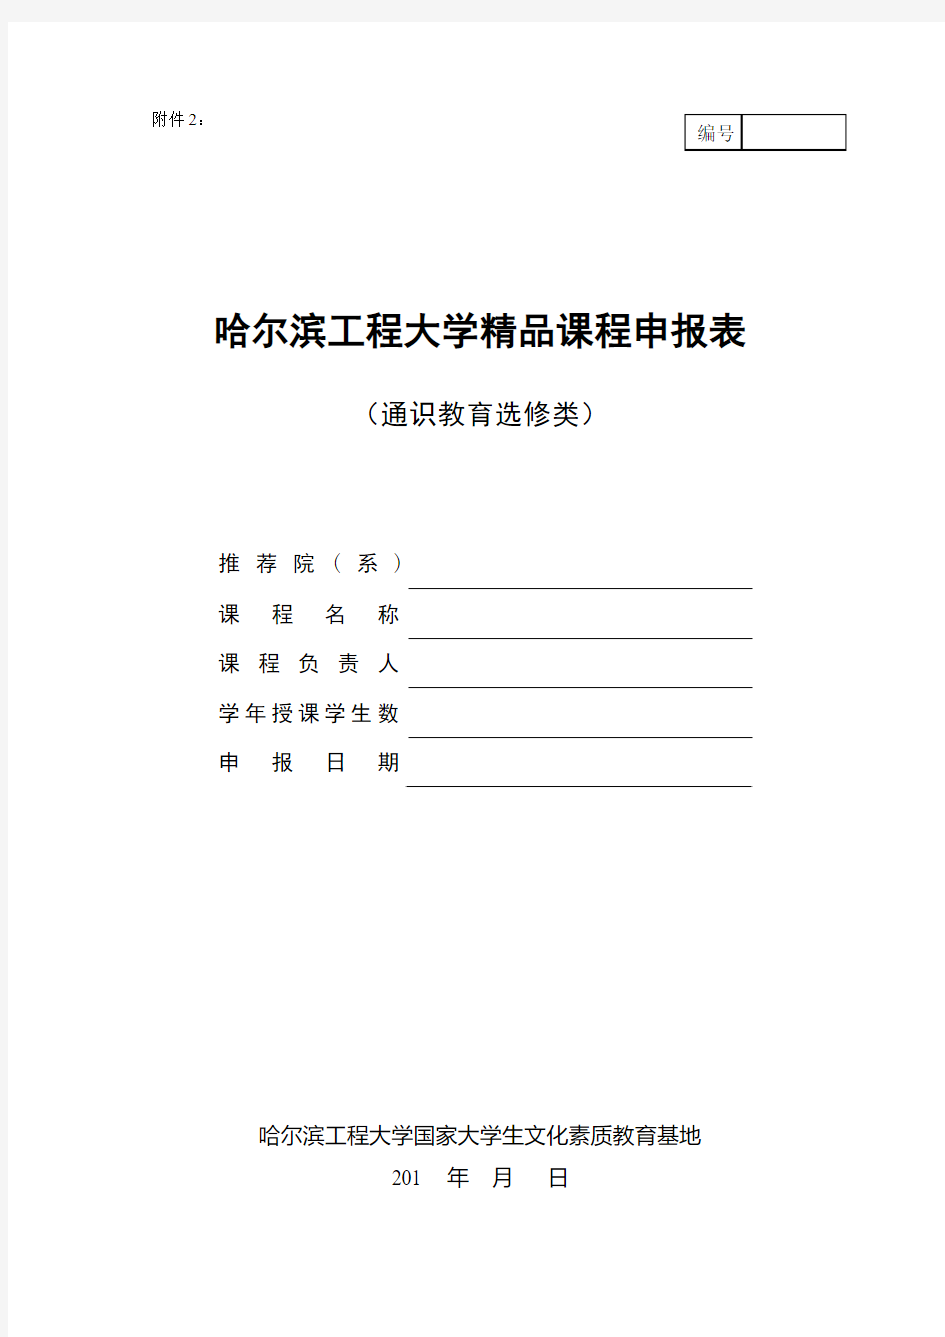 哈尔滨工程大学精品课程申报表(通识教育选修类)